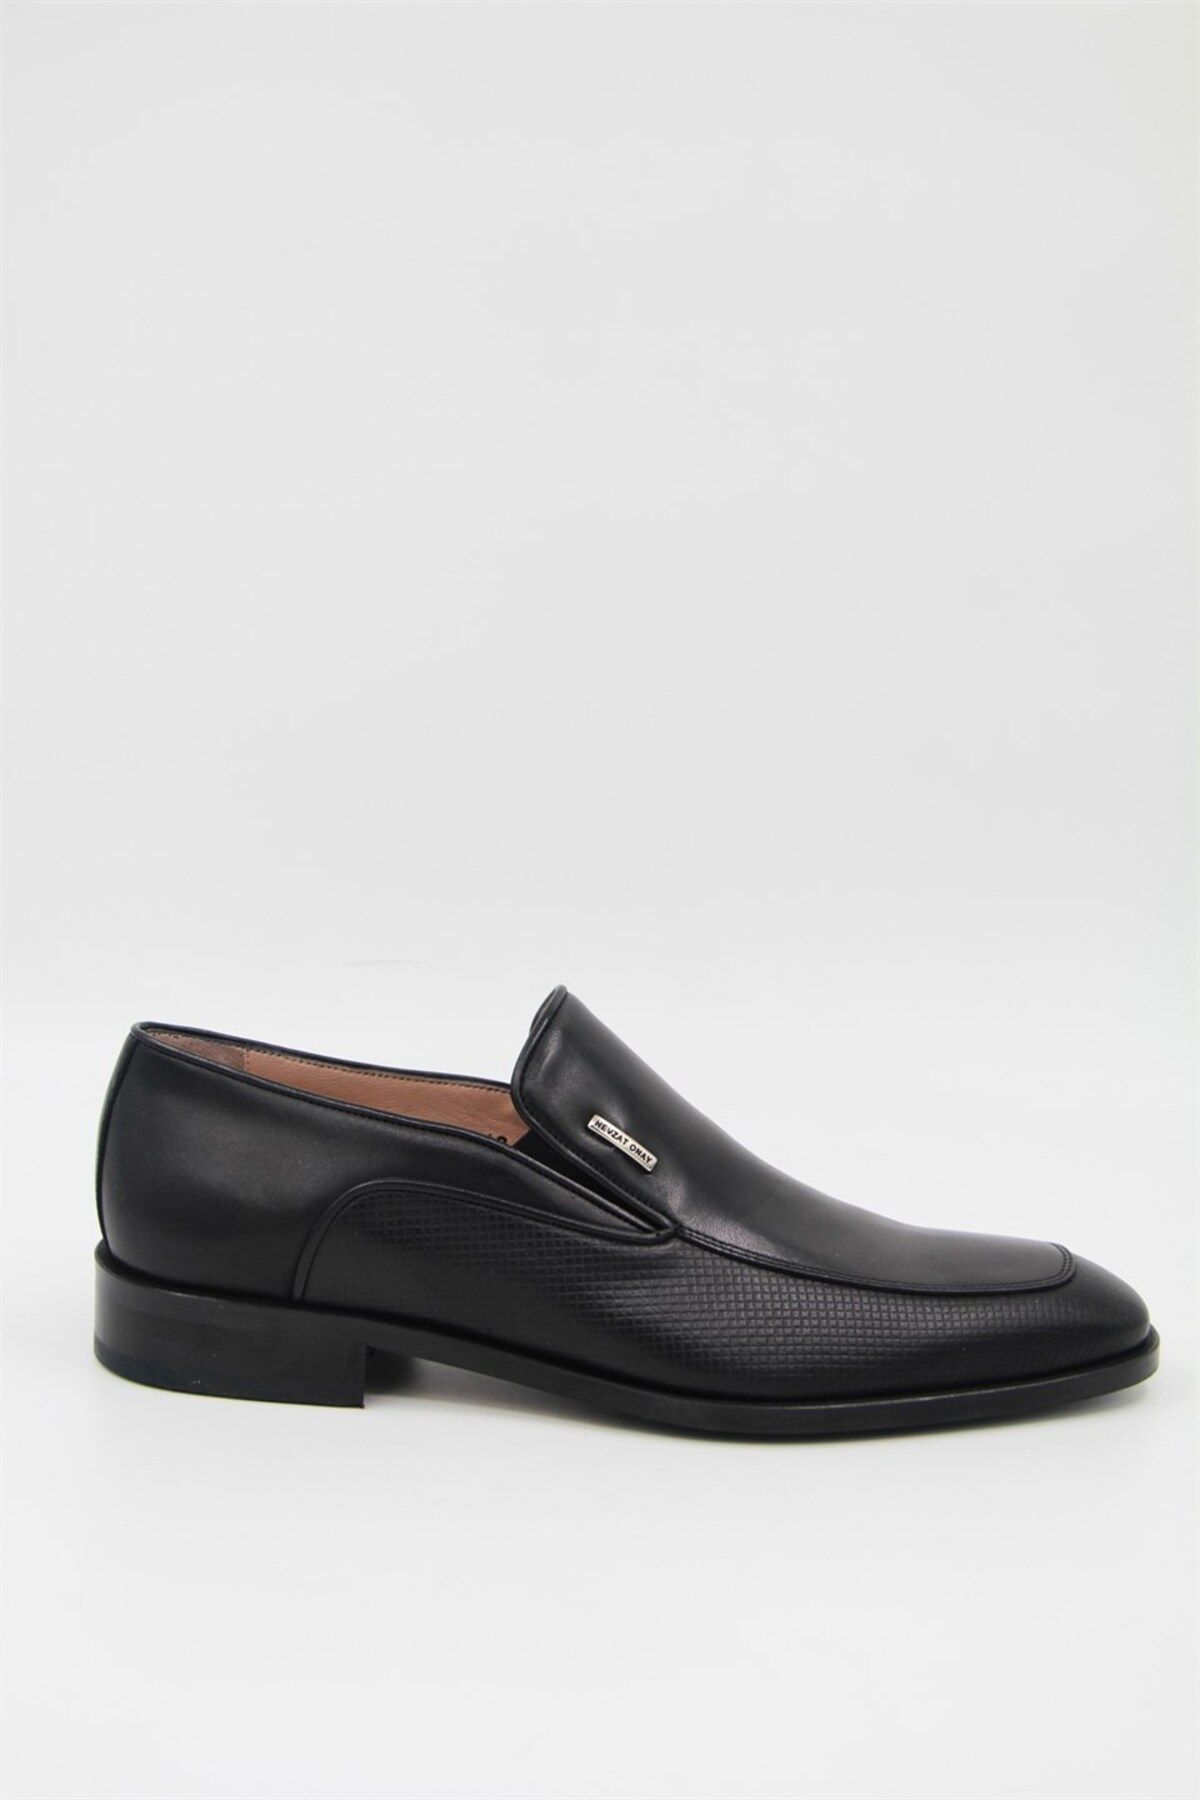 Nevzat Onay 9122-223 Erkek Klasik Ayakkabı - Siyah